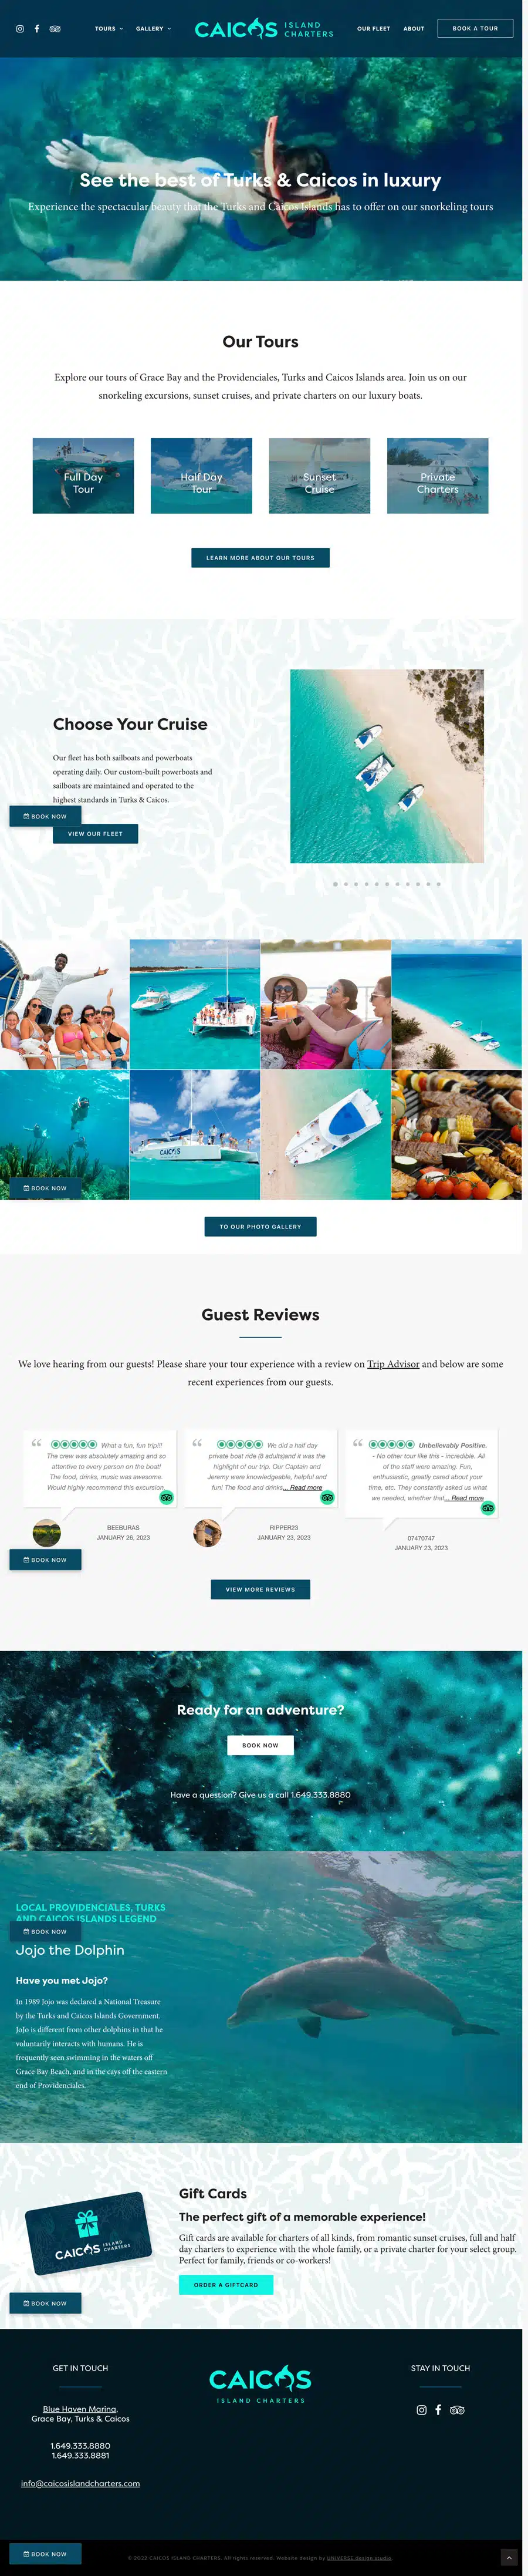 caicos-island-charters-website-wordpress-toronto-website-designer-home